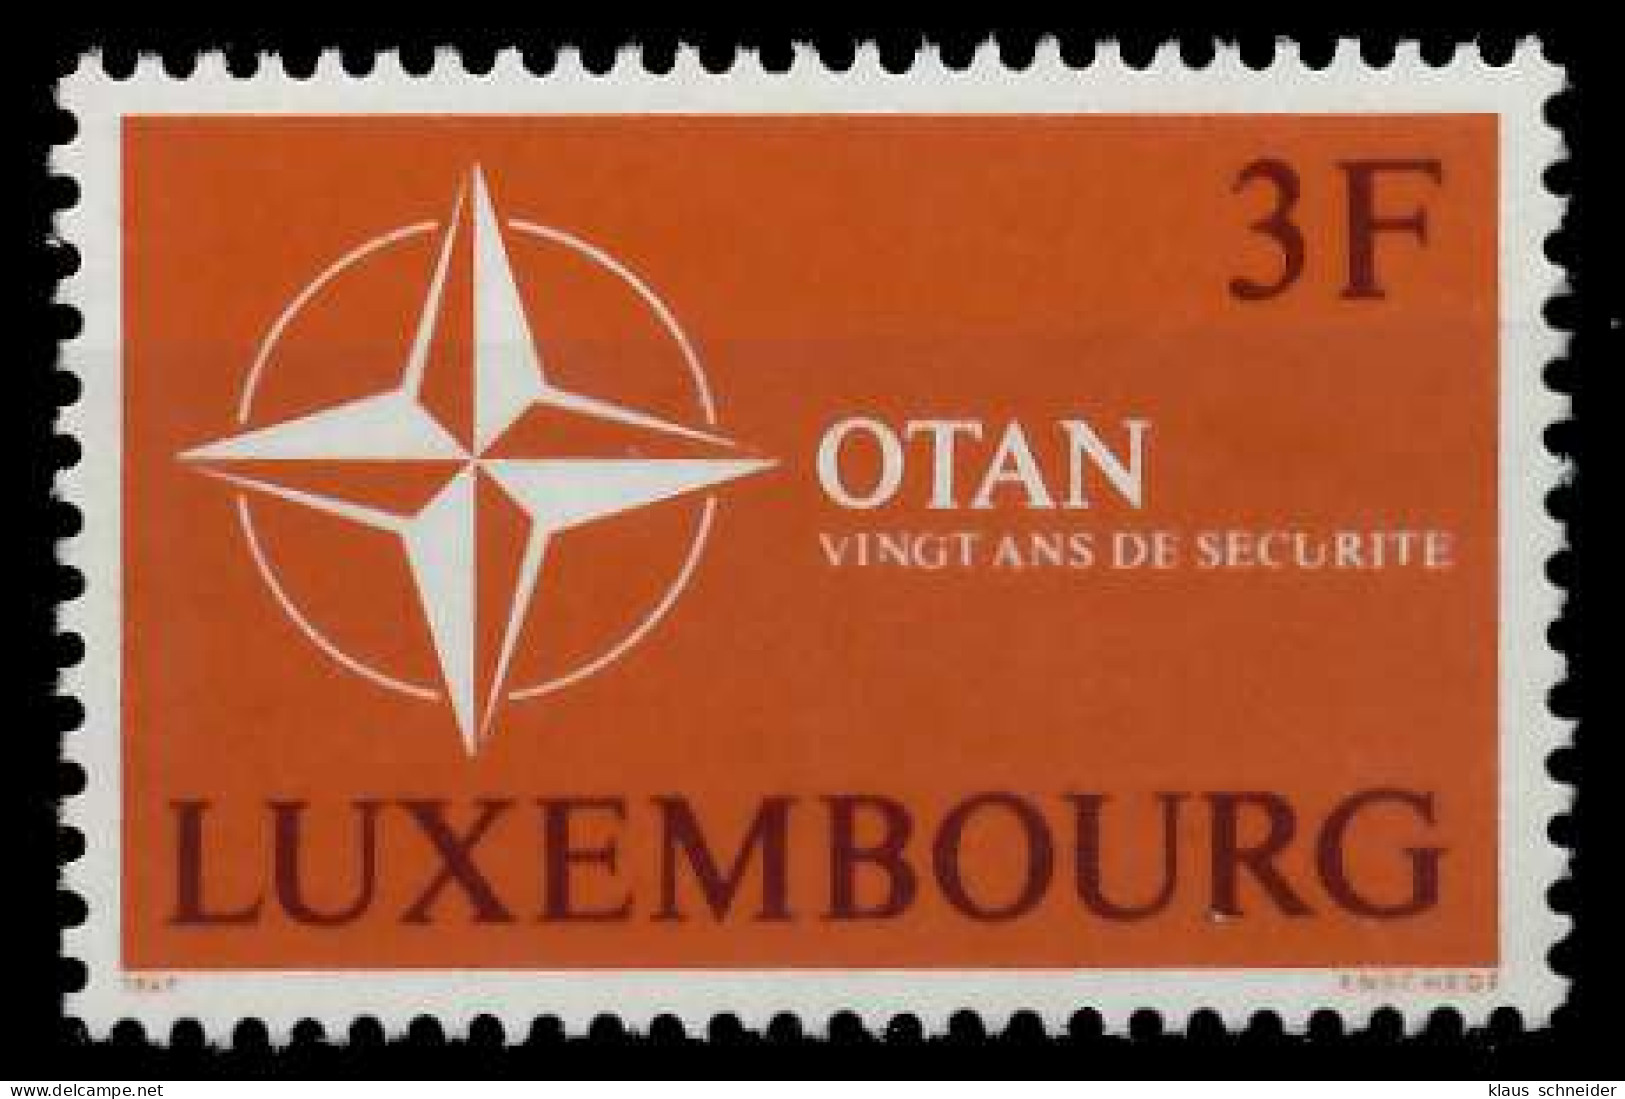 LUXEMBURG 1969 Nr 794 Postfrisch SAE9522 - Unused Stamps